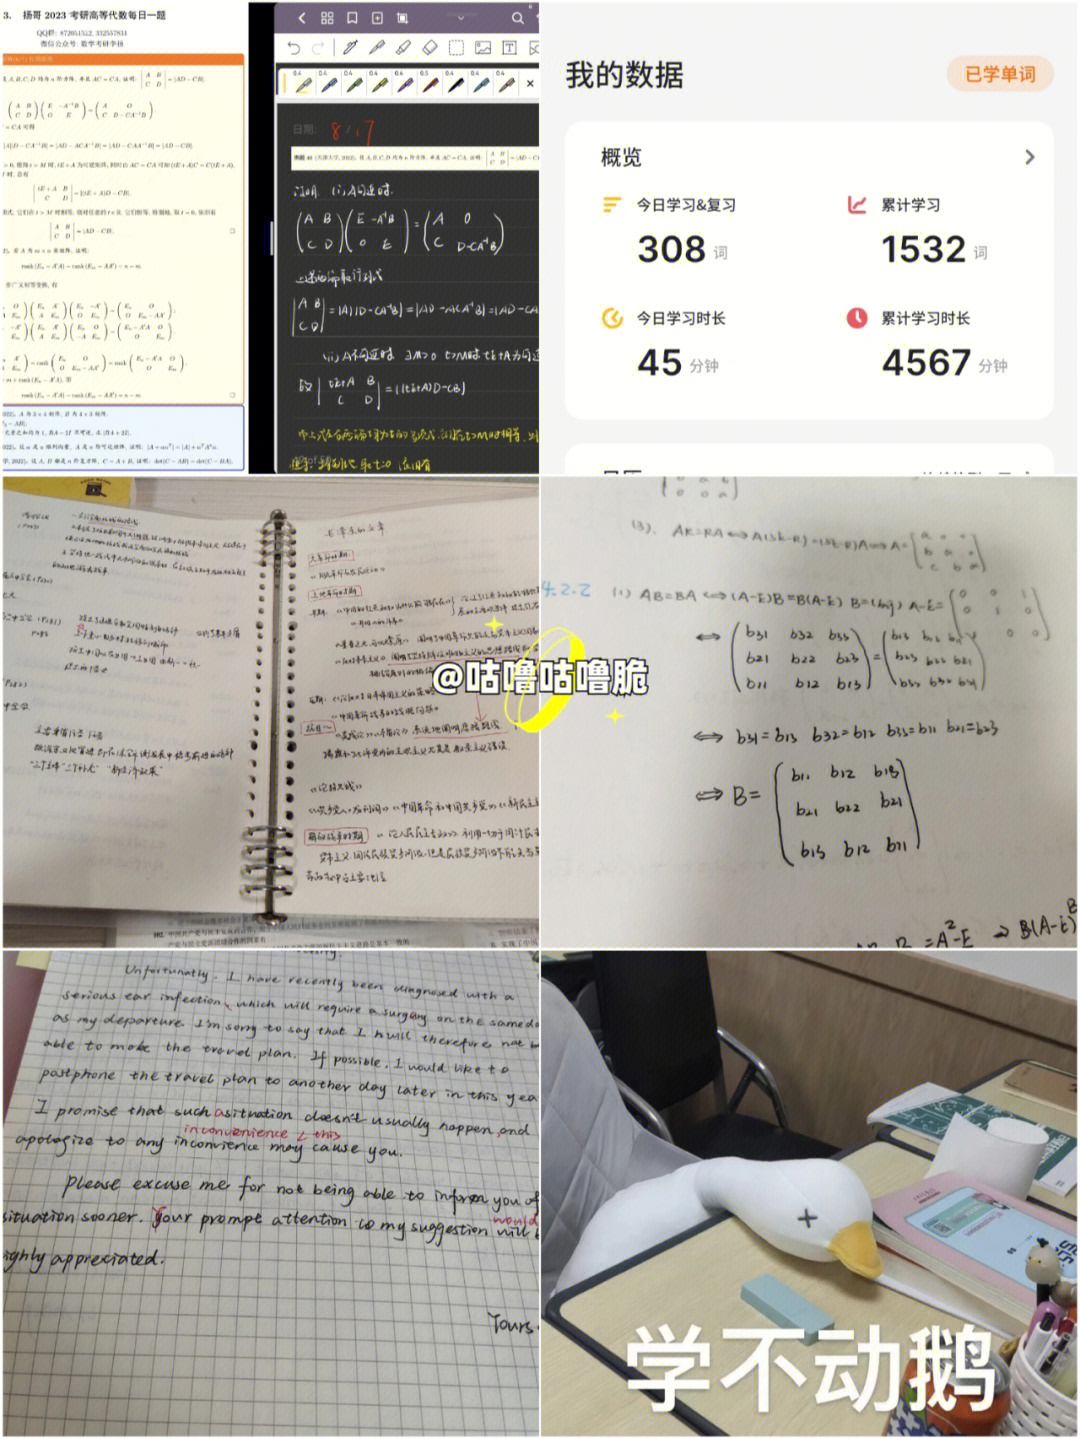 23数学专业考研06暑期打卡第466466天